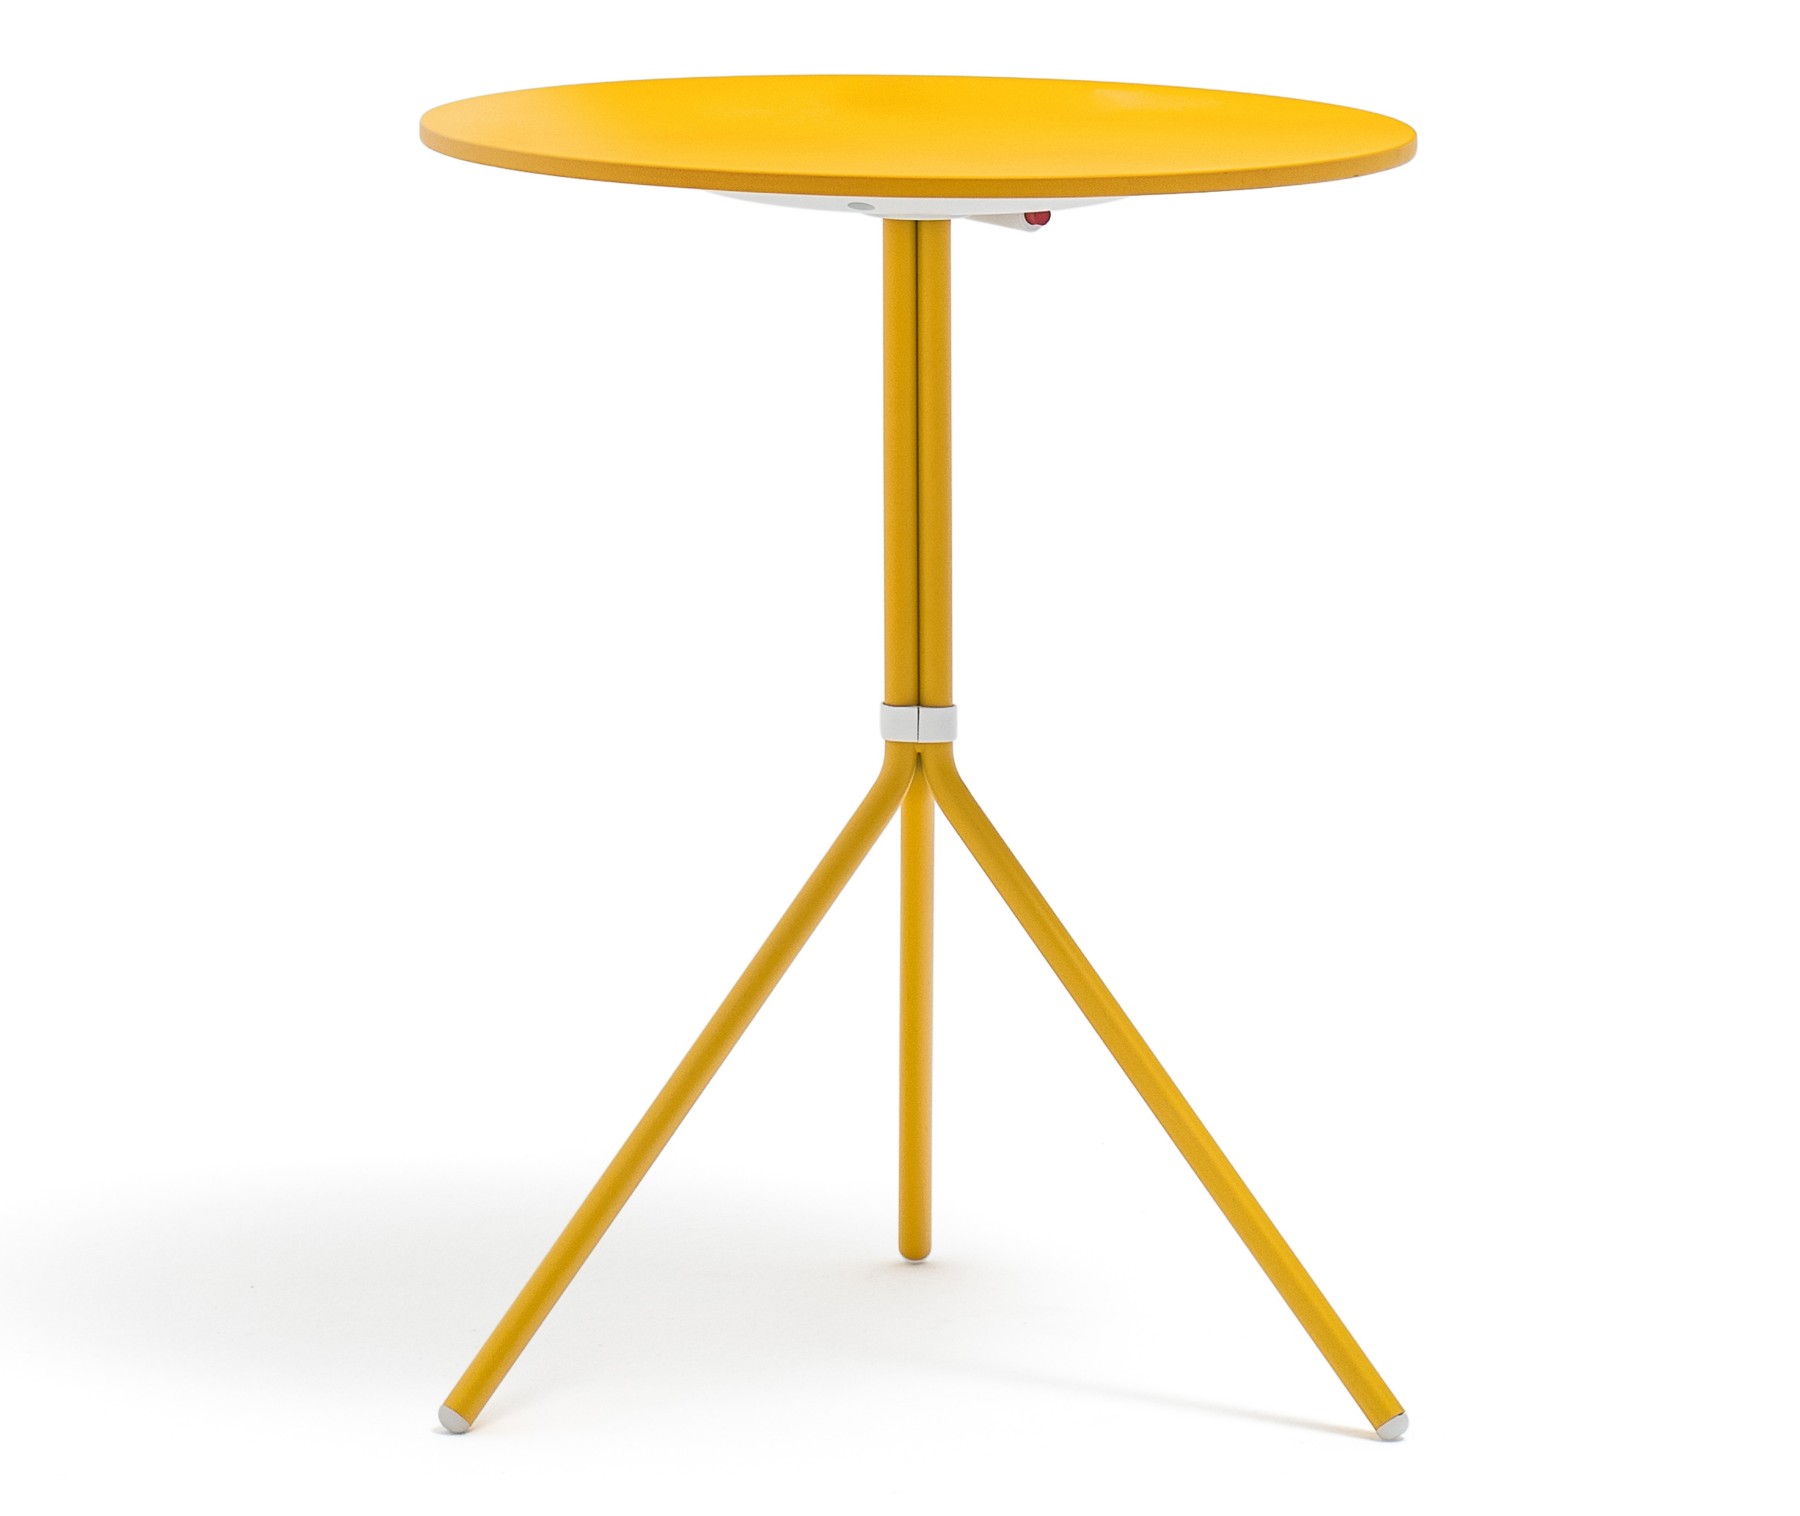 Bistrotisch rund gelb Metall, Mettaltisch rund gelb, Tisch klappbar Metall, Durchmesser 65 cm